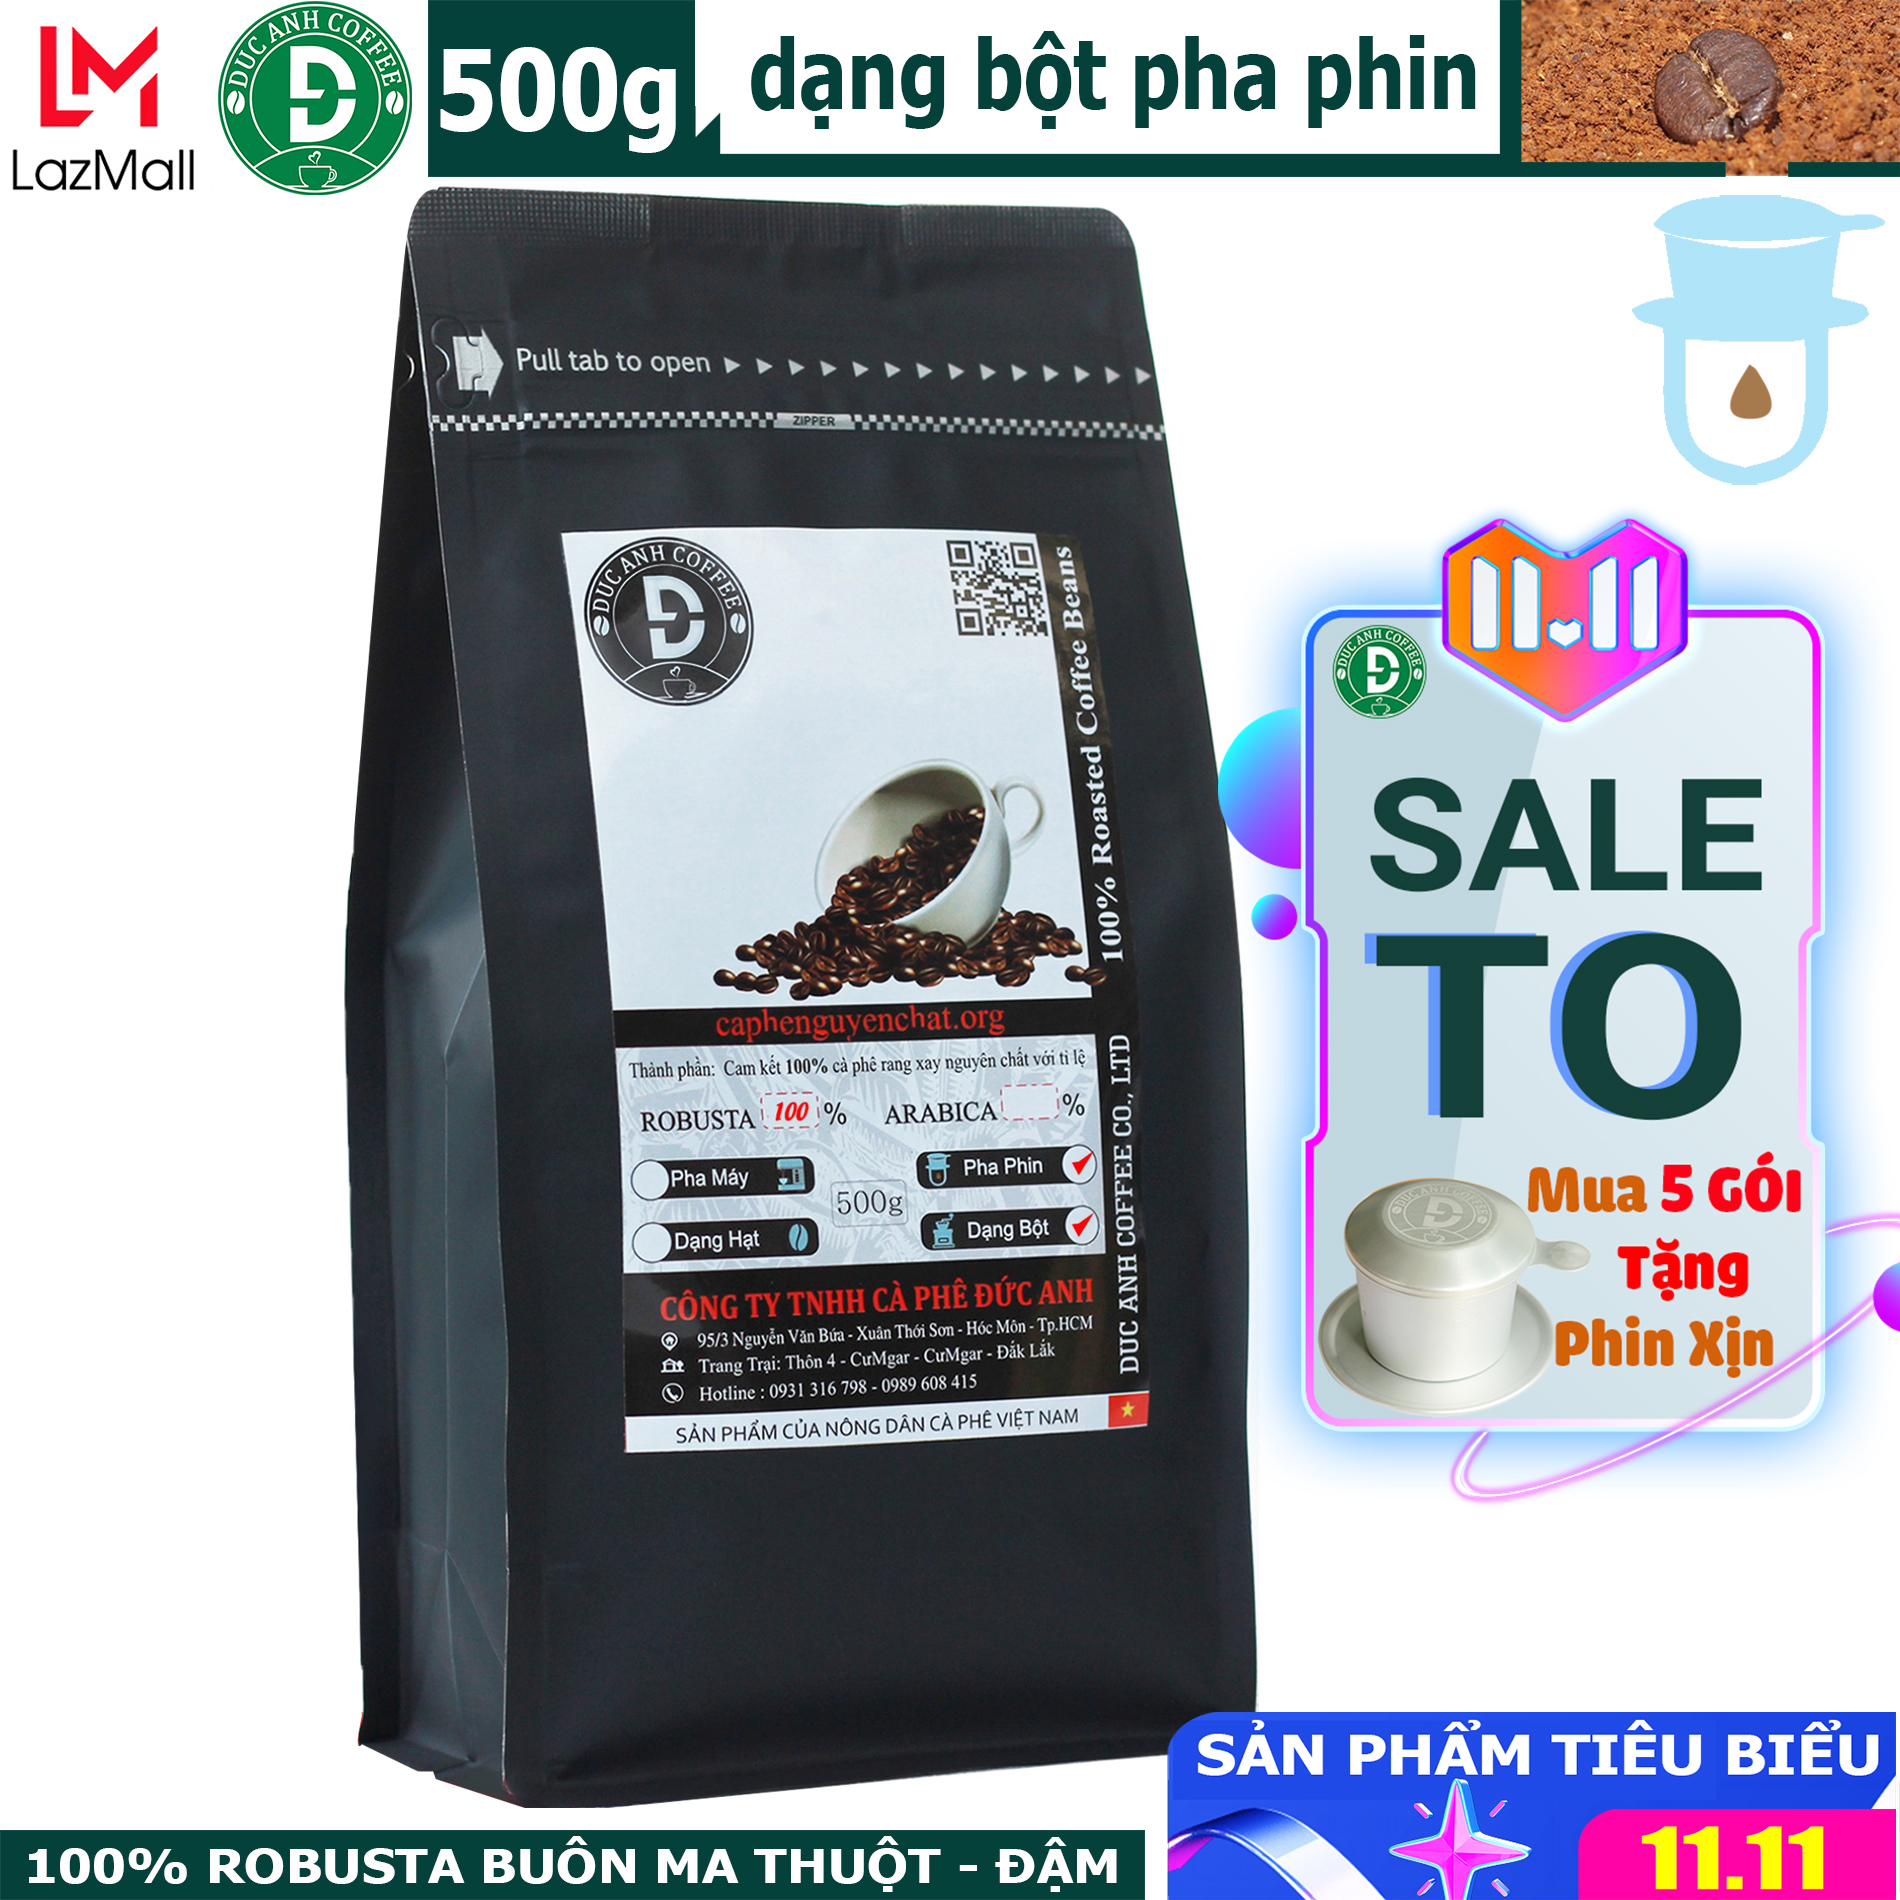 TRỢ GIÁ SỐC] gói 500gram Cà phê rang mộc Robusta Pha Phin đậm vị, mạnh